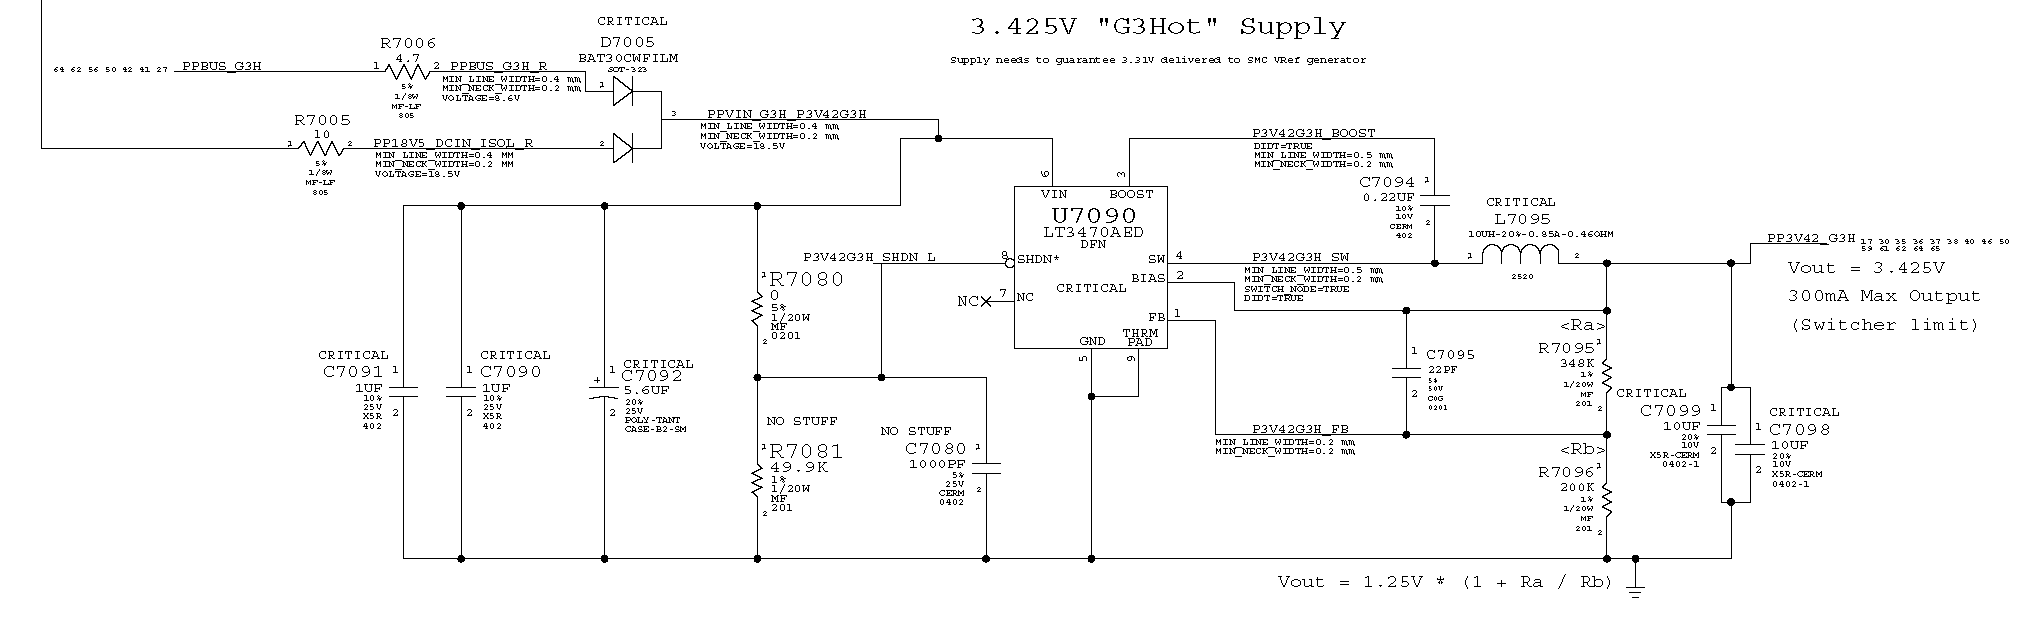 2015-Macbook-Air-A1466-PP3V42-circuit